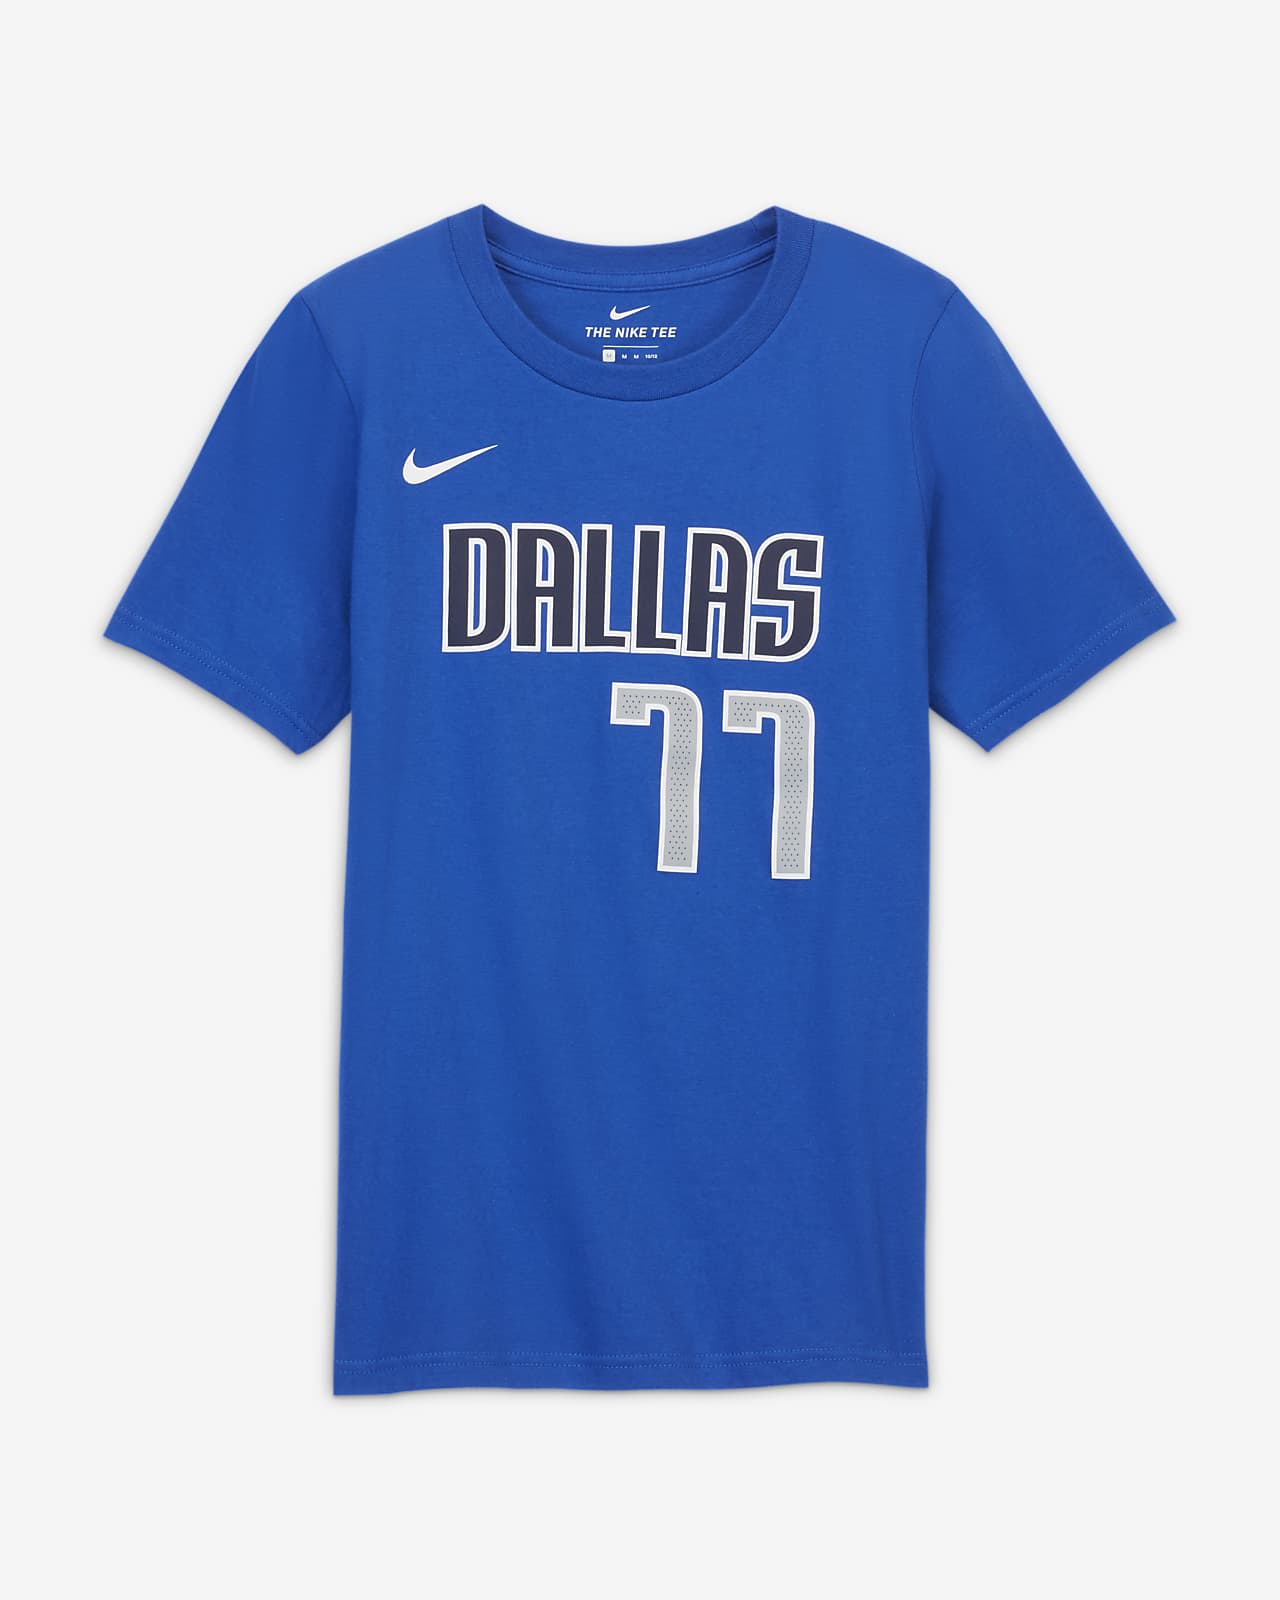 Luka Dončić Mavericks Camiseta Nike NBA Player - Niño/a